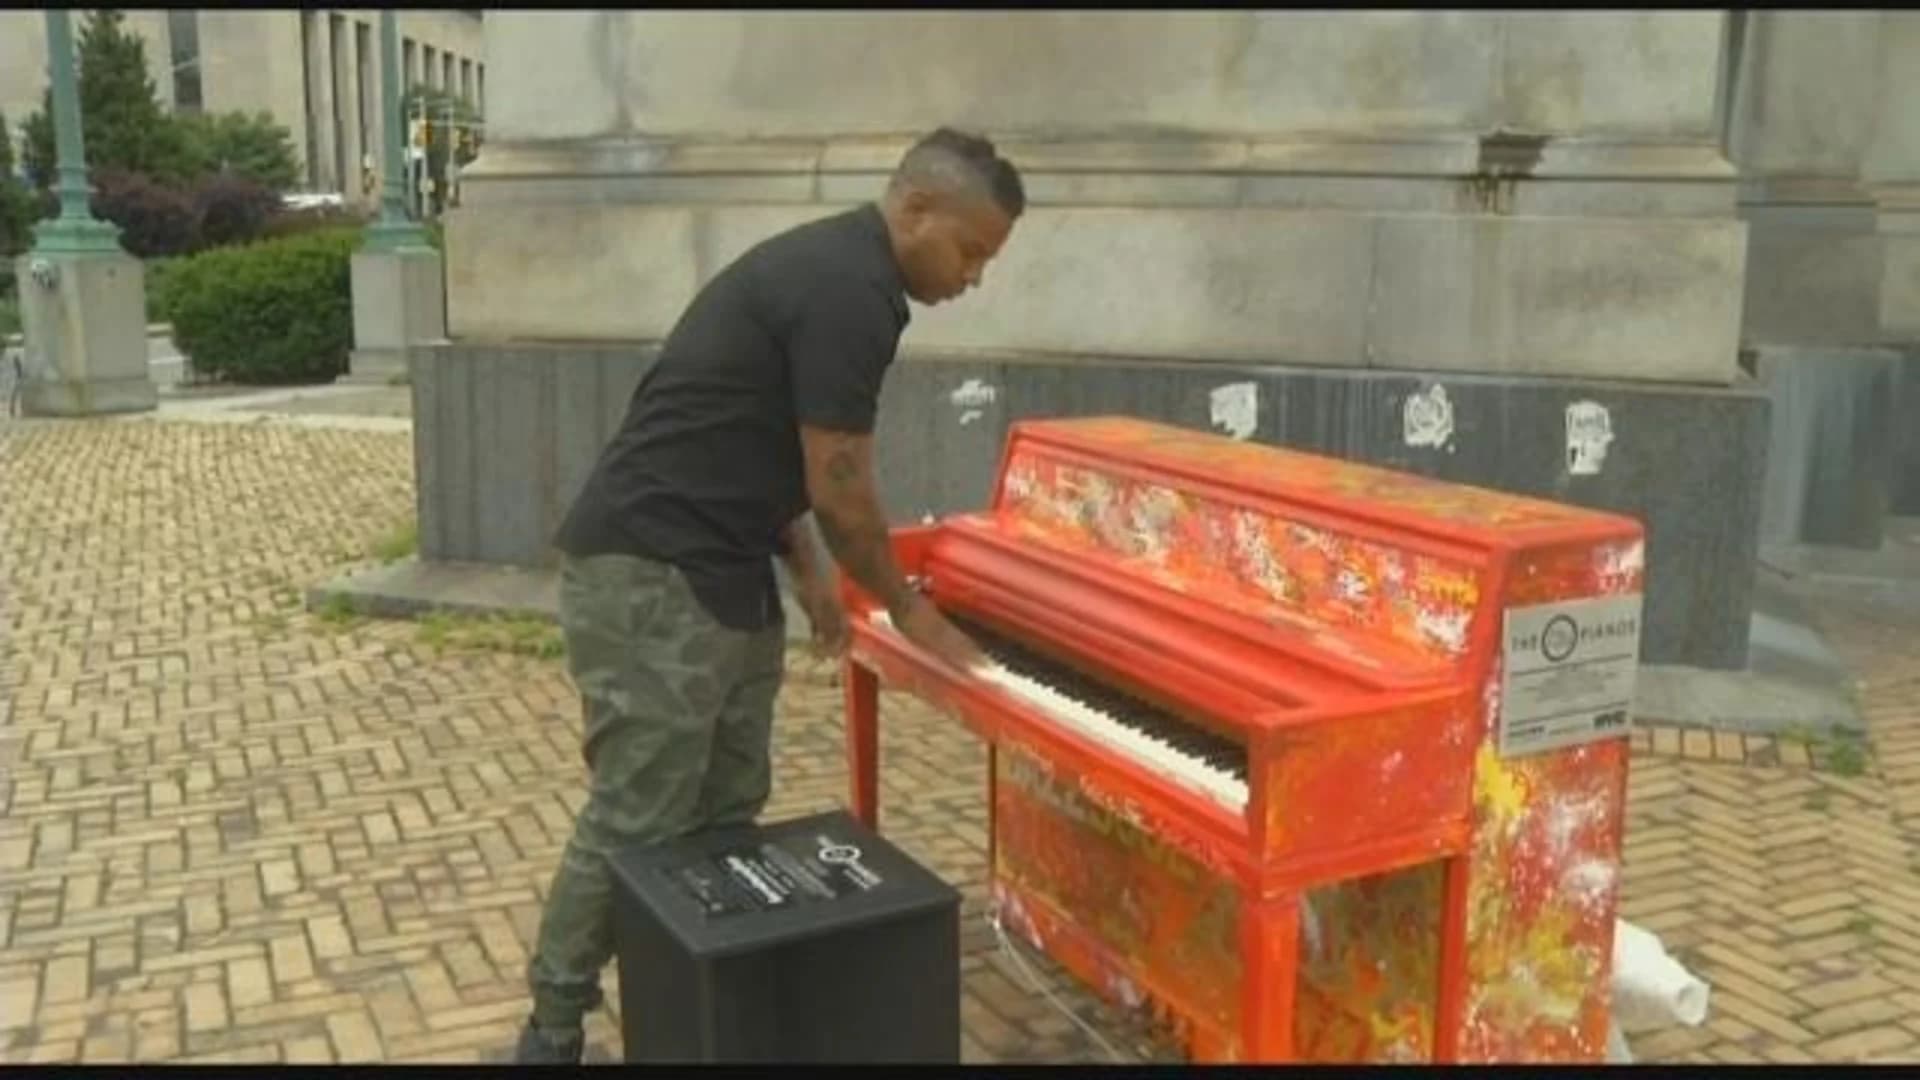 Pianos return to Prospect Park